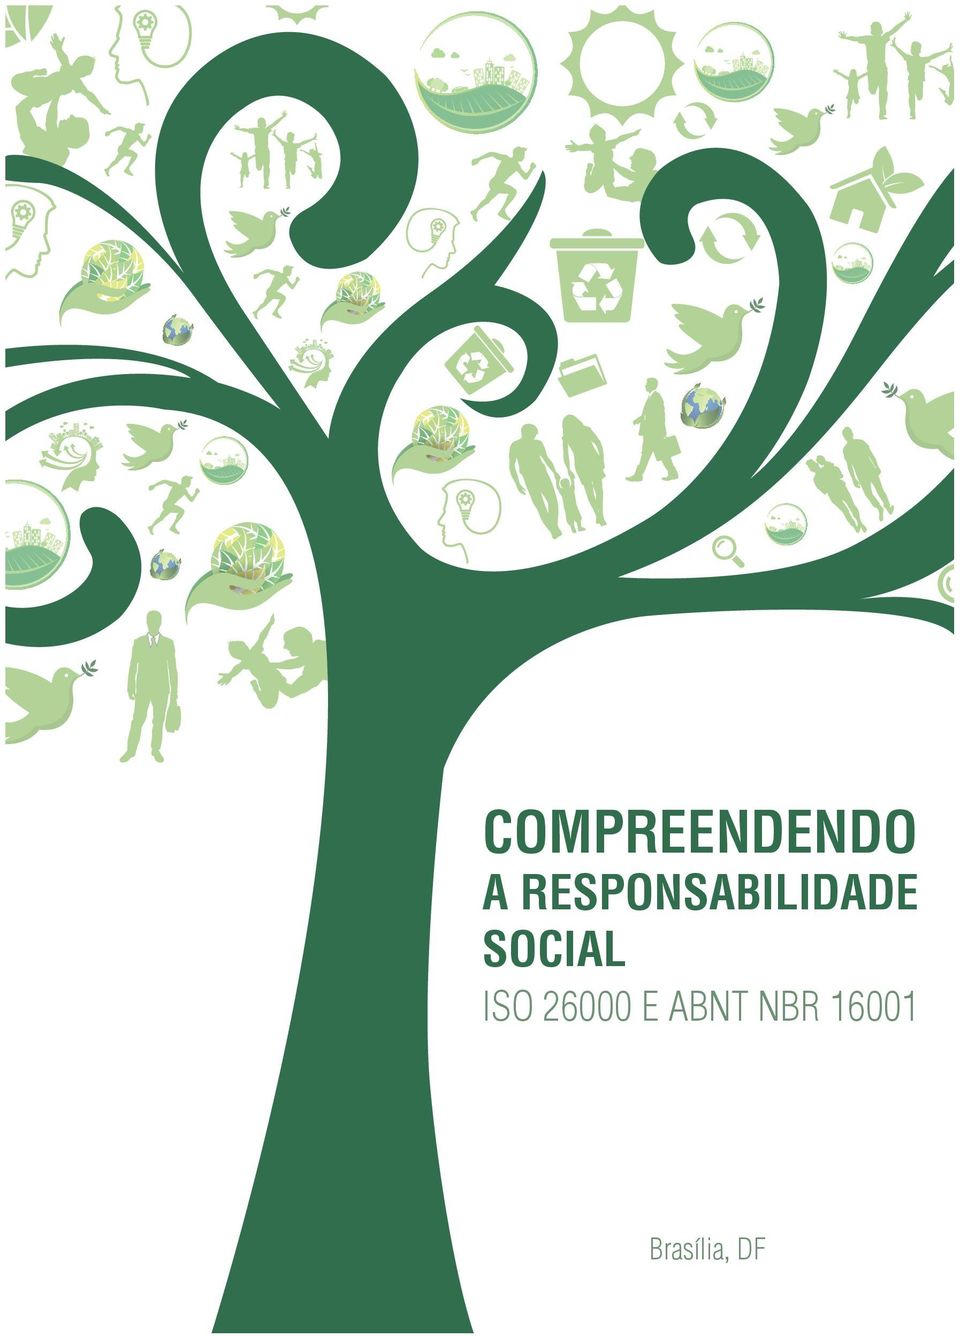 SOCIAL ISO 26000 E